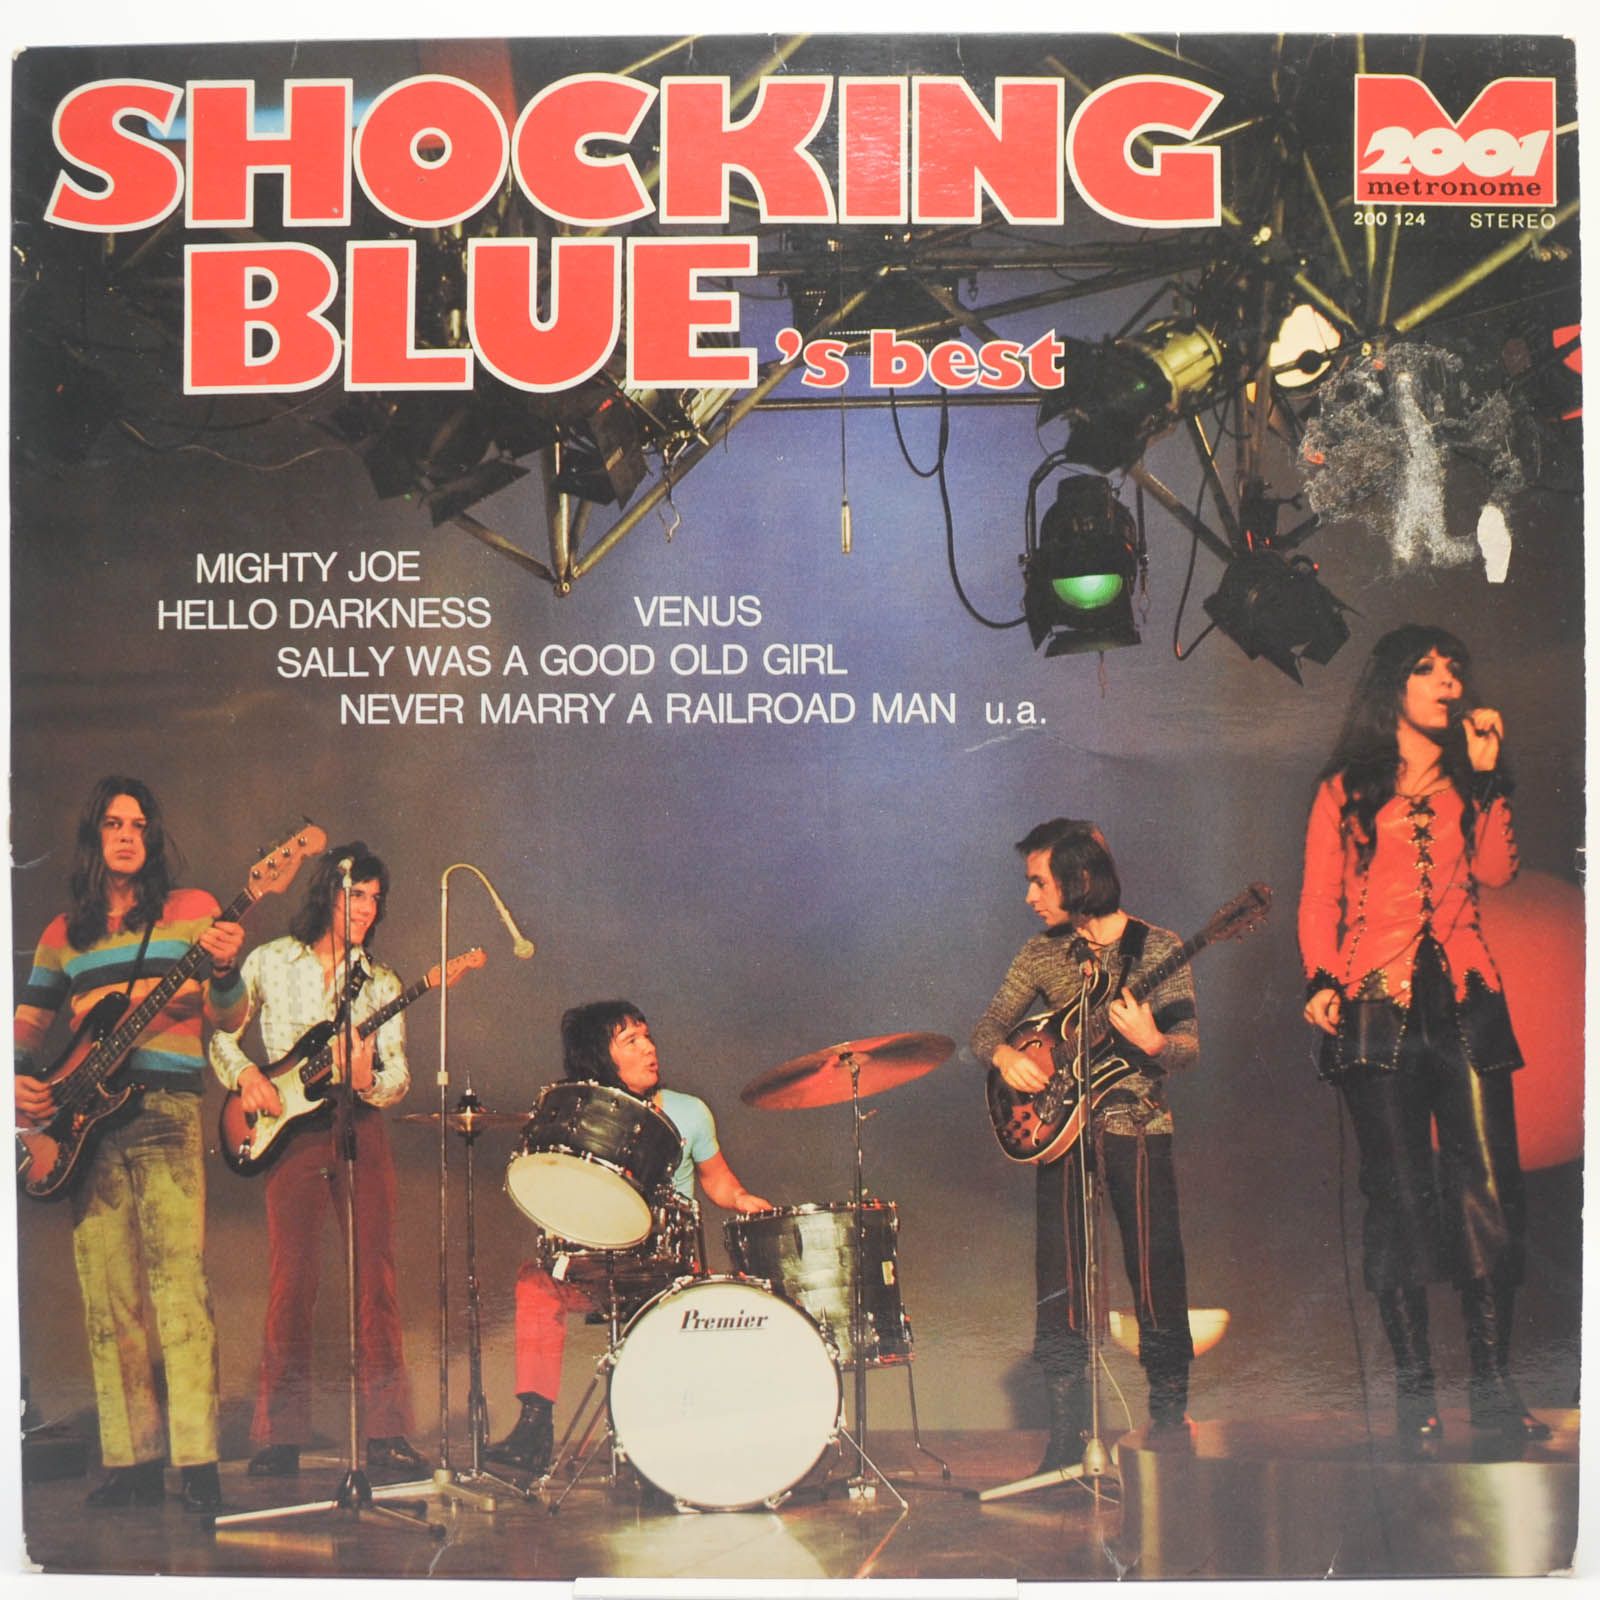 Shocking Blue — Shocking Blue's Best, 1970